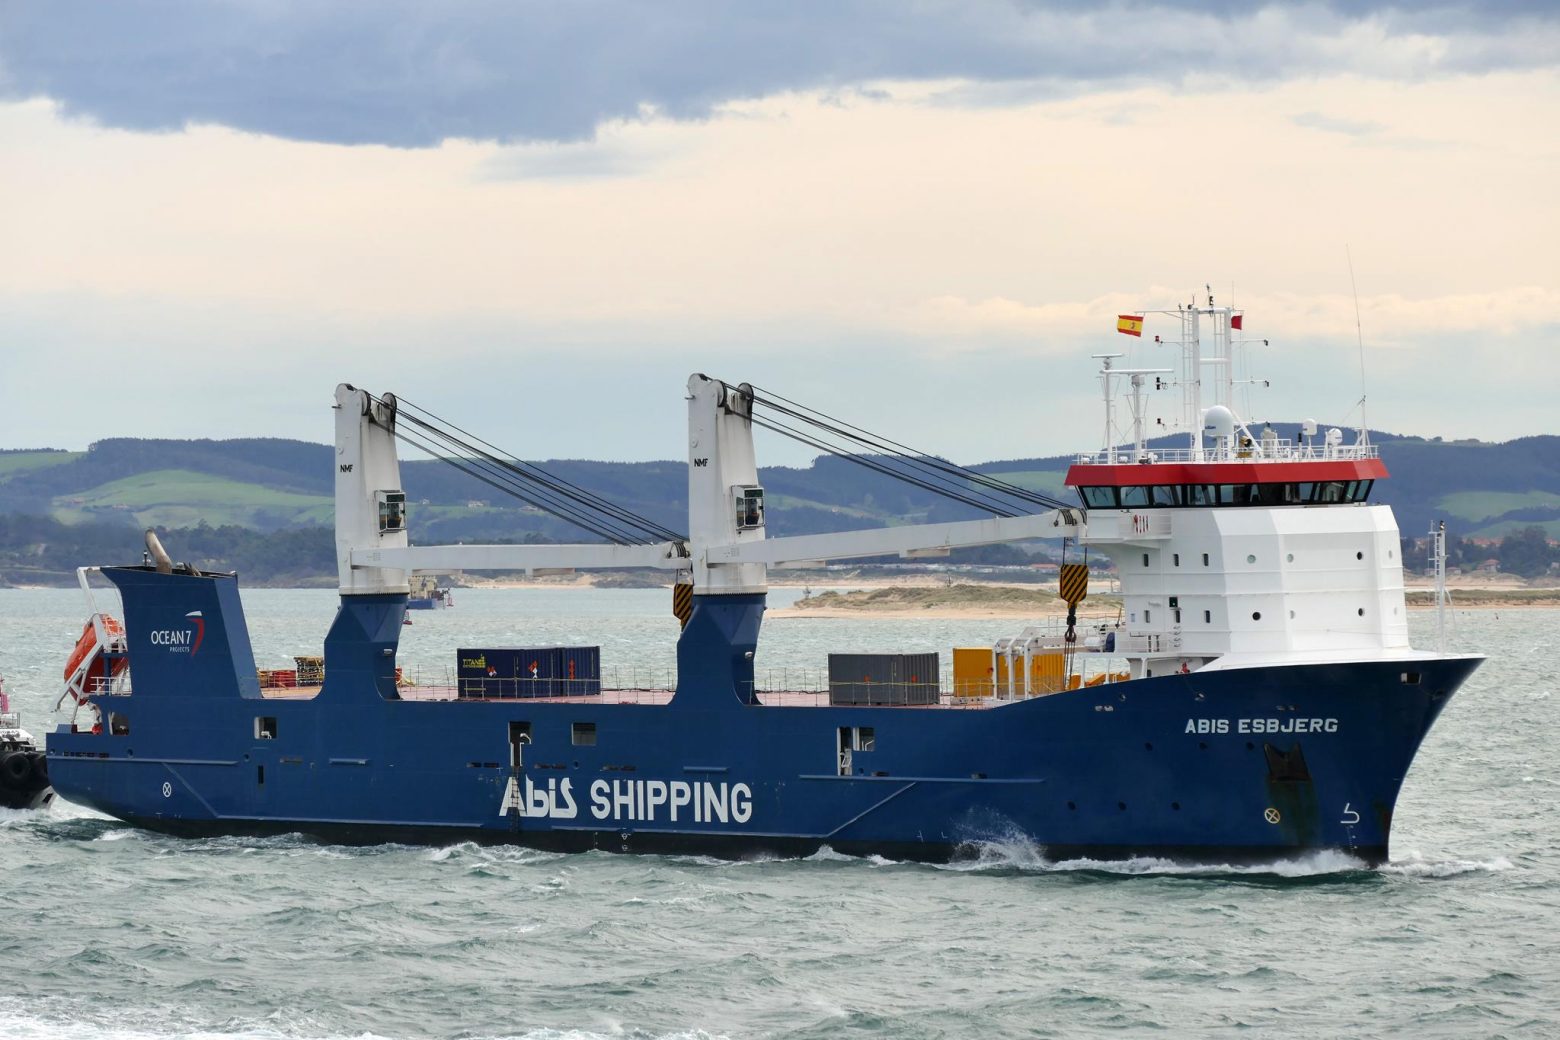 Νορβηγία: Φορτηγό πλοίο πλέει ακυβέρνητο - Σε εξέλιξη επιχείρηση διάσωσης του πληρώματος